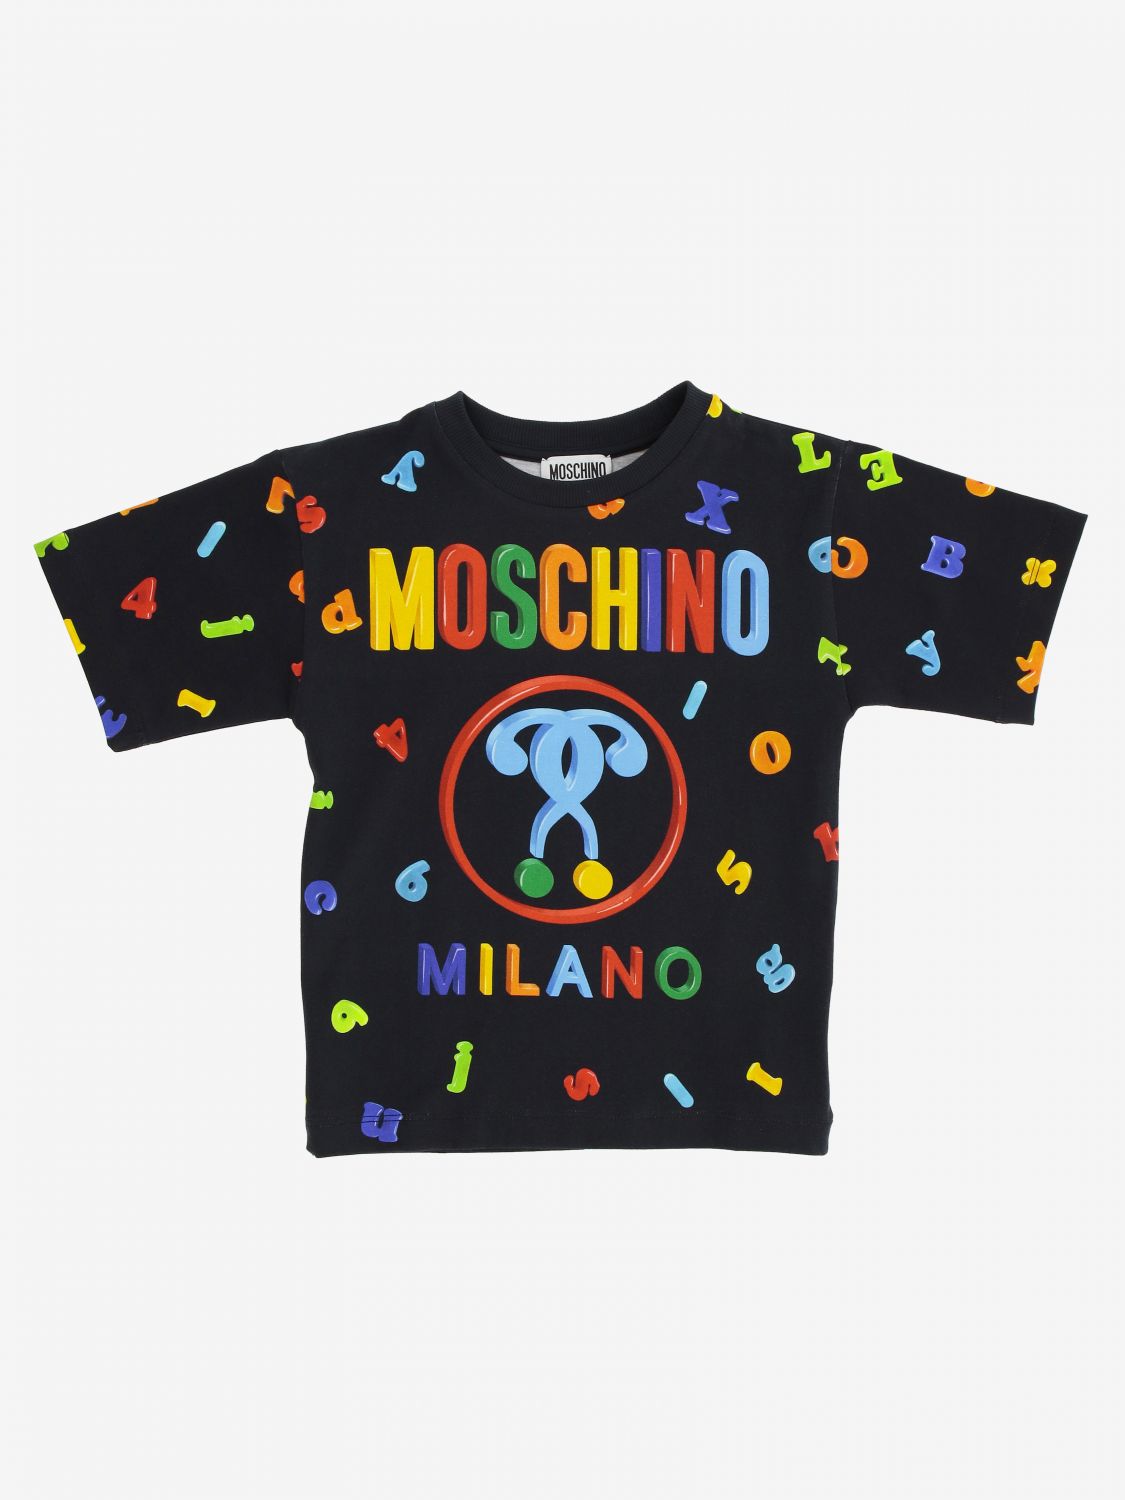 moschino tee shirt